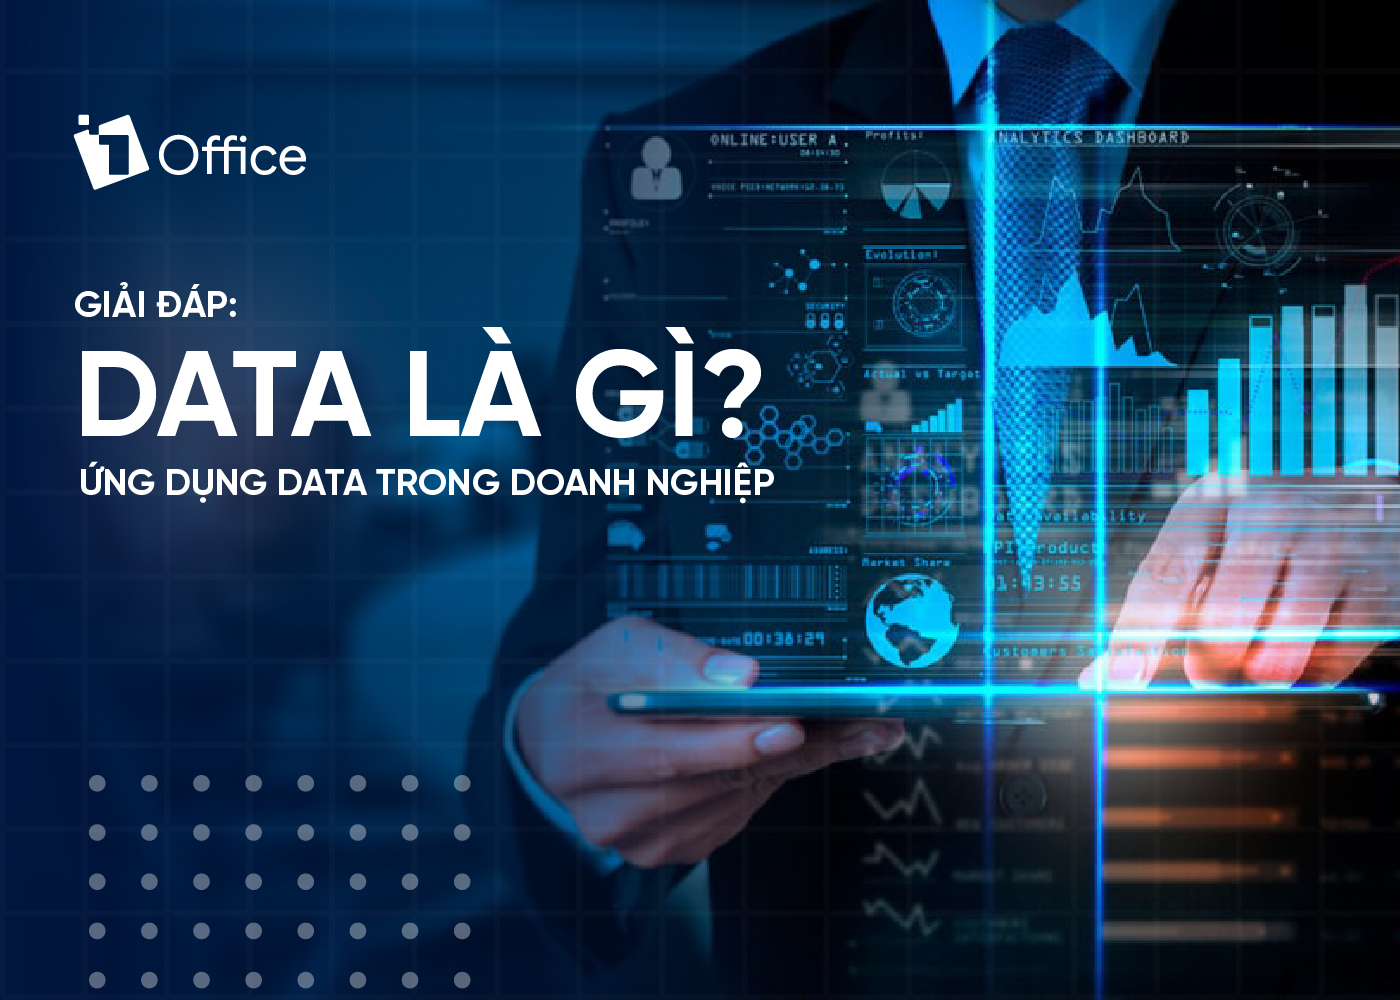 Giải đáp: Data là gì? Ứng dụng data trong doanh nghiệp